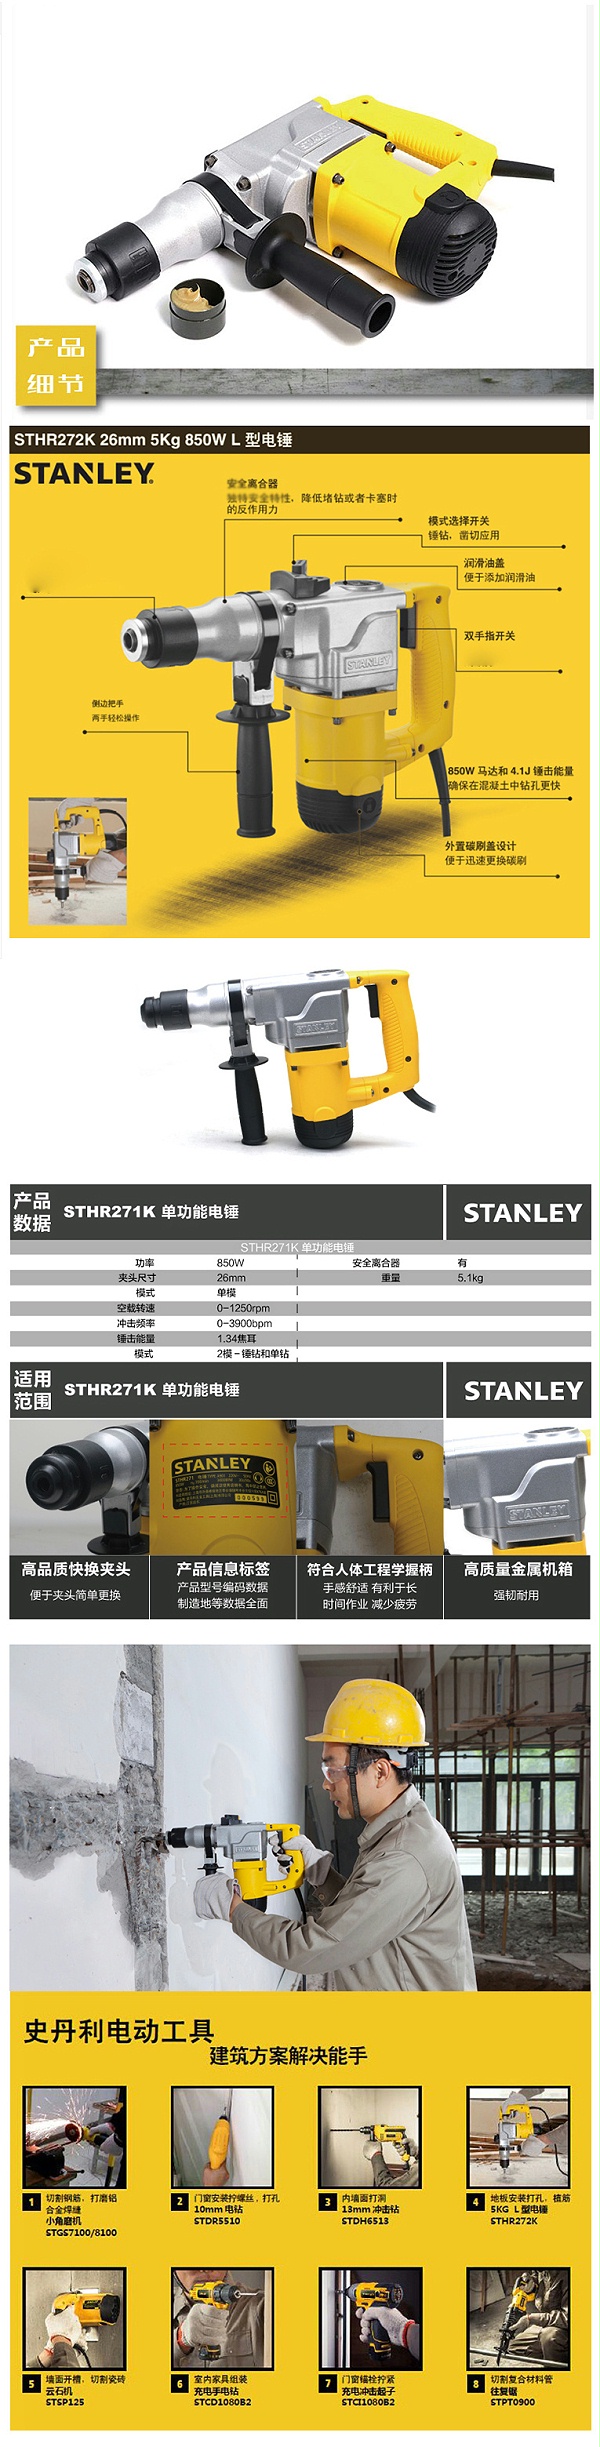 史丹利(Stanley) 电锤 STHR272K-A9 850W 26mm 5公斤双功能